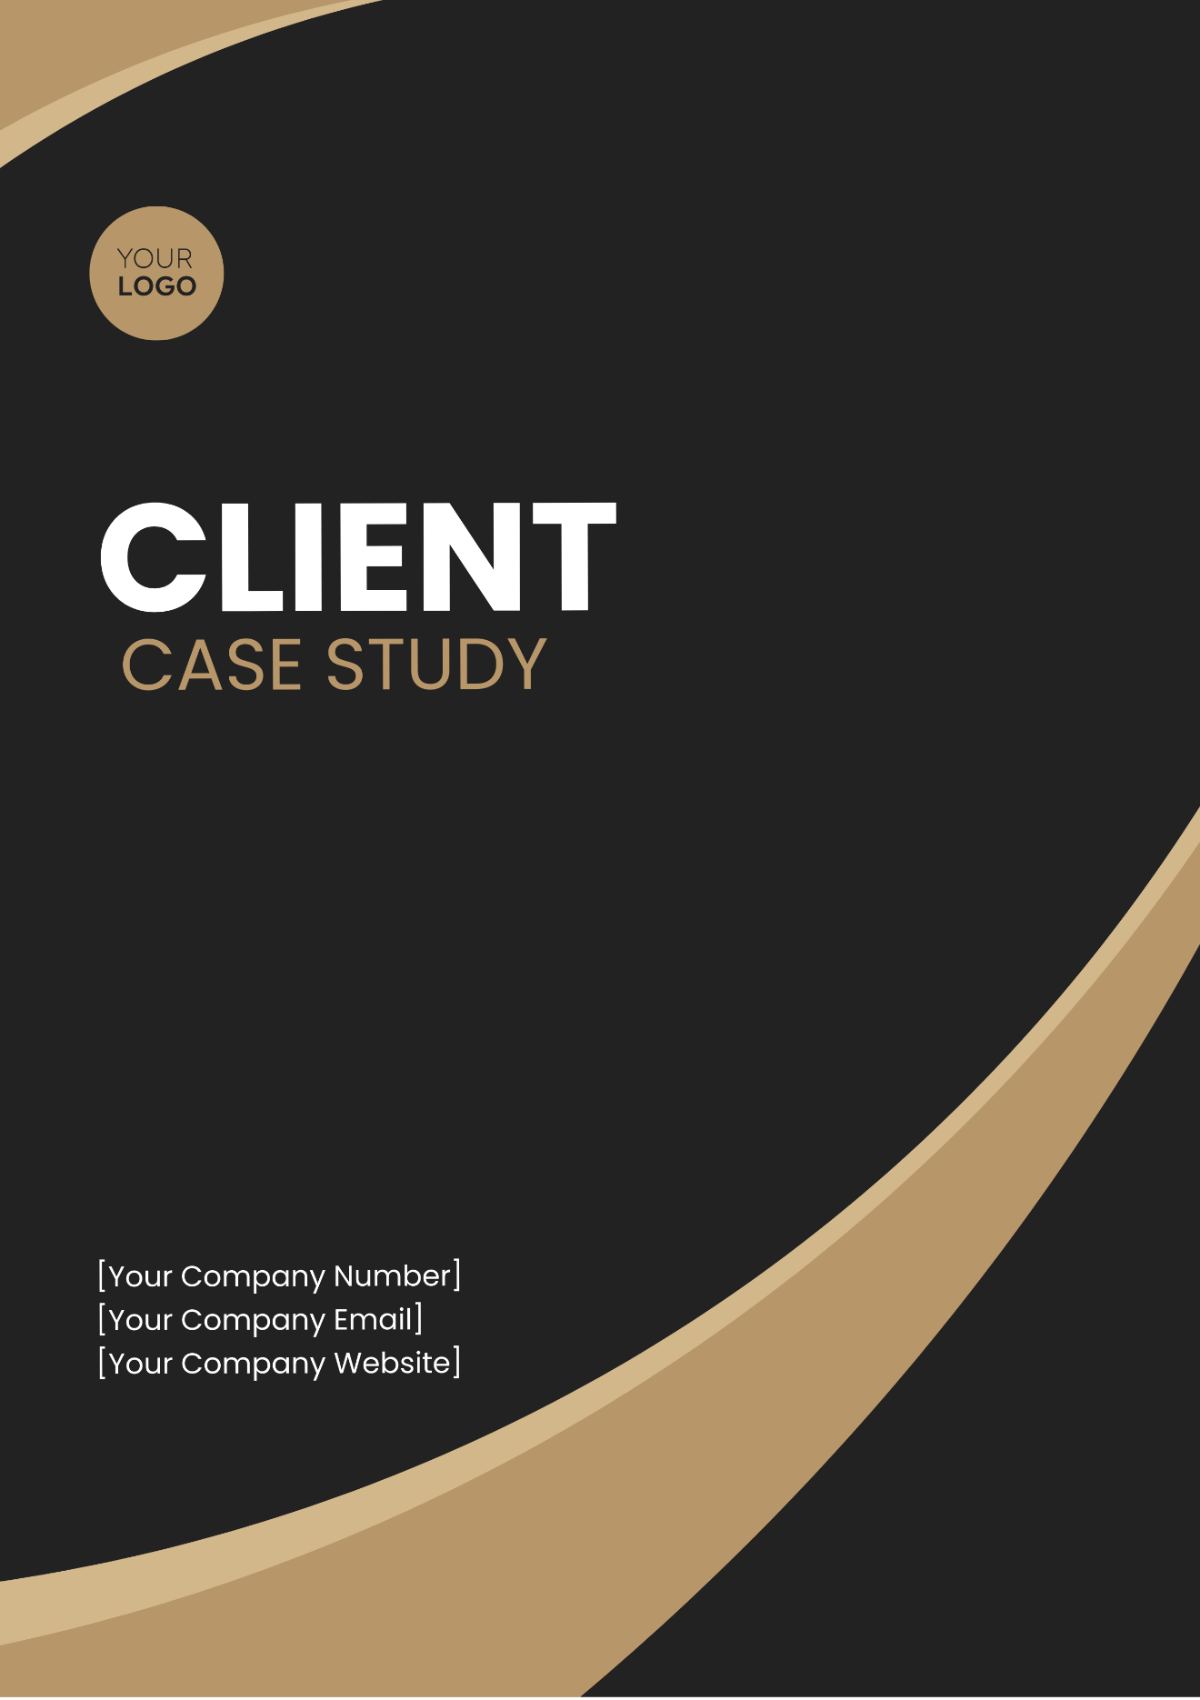 Client Case Study Template